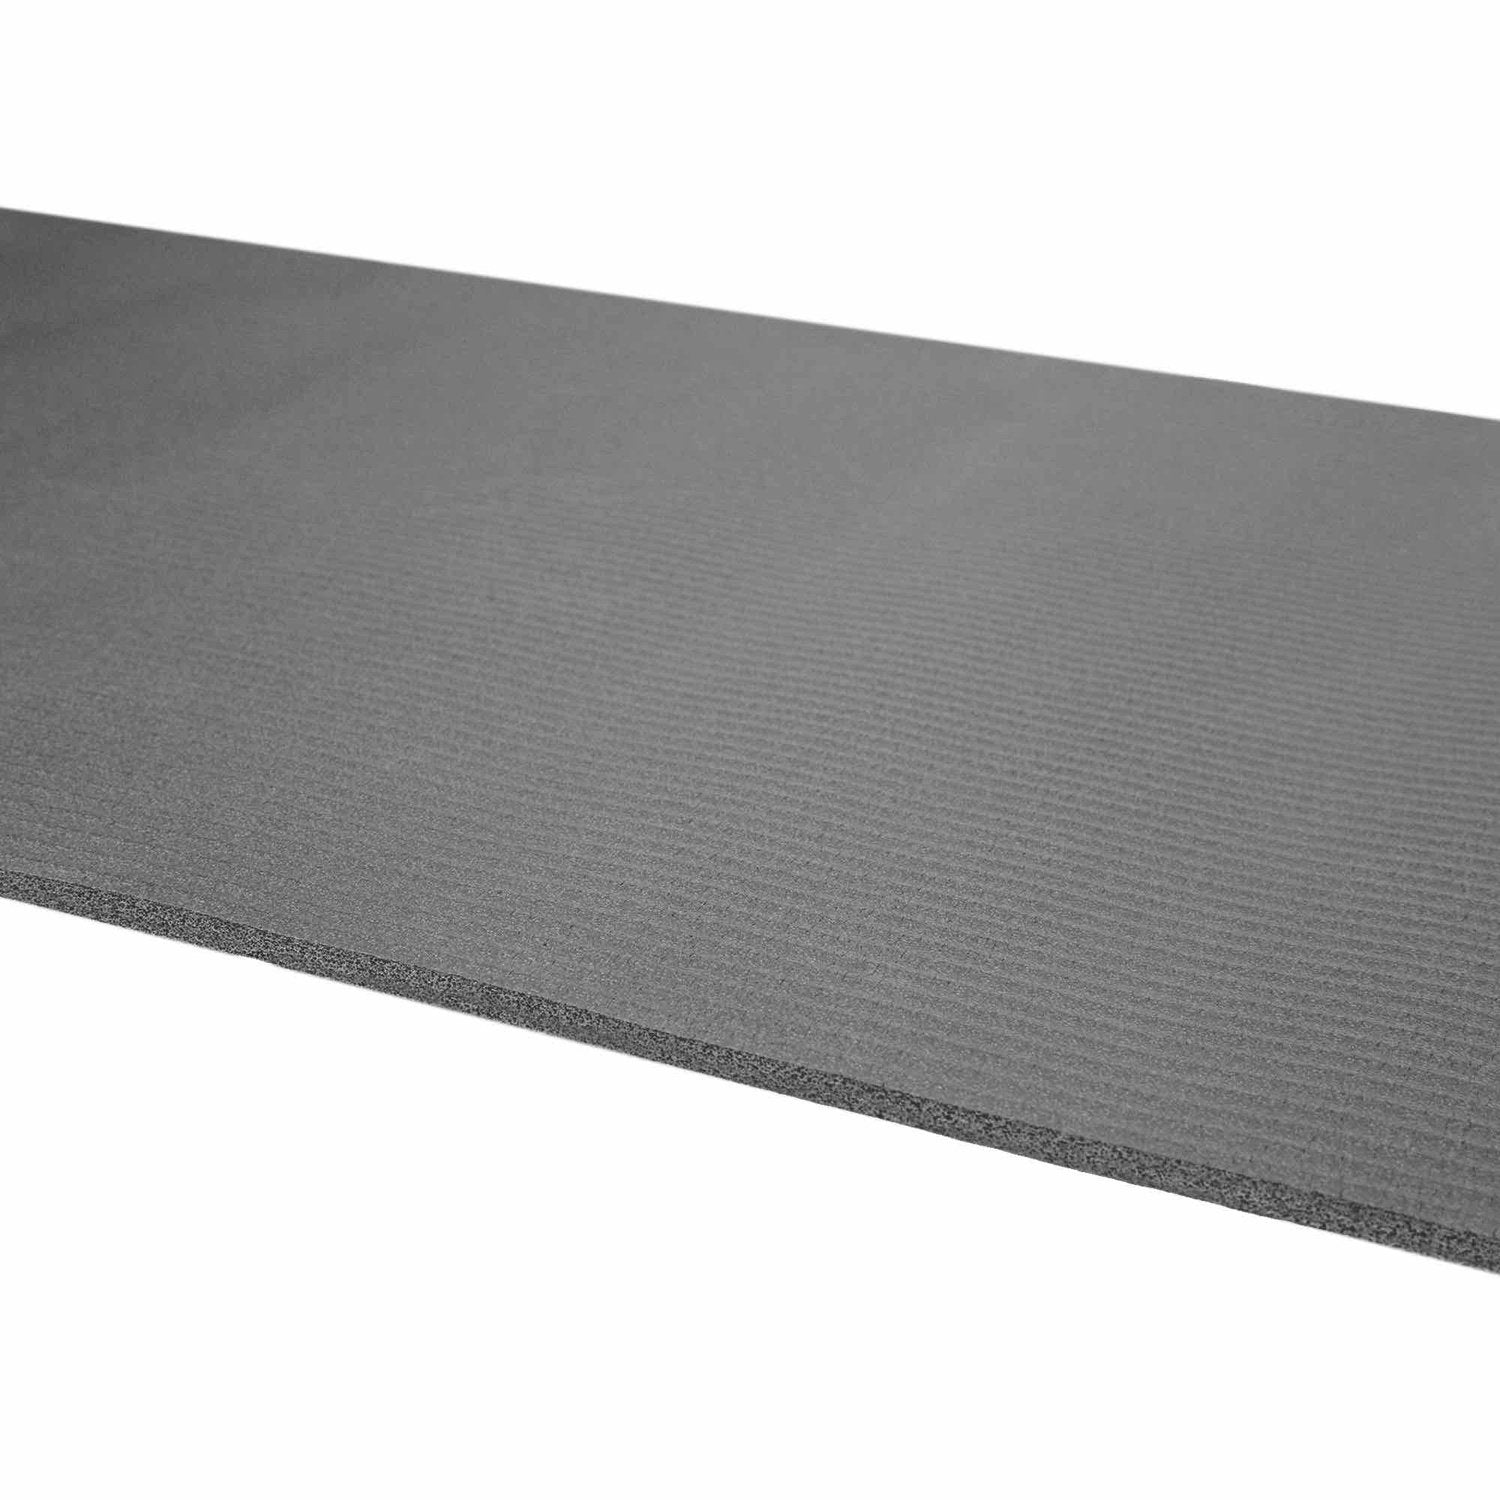 HighPowered Yogamatte (NBR, 183x61x0.8 cm) Grau kaufen bei HighPowered.ch